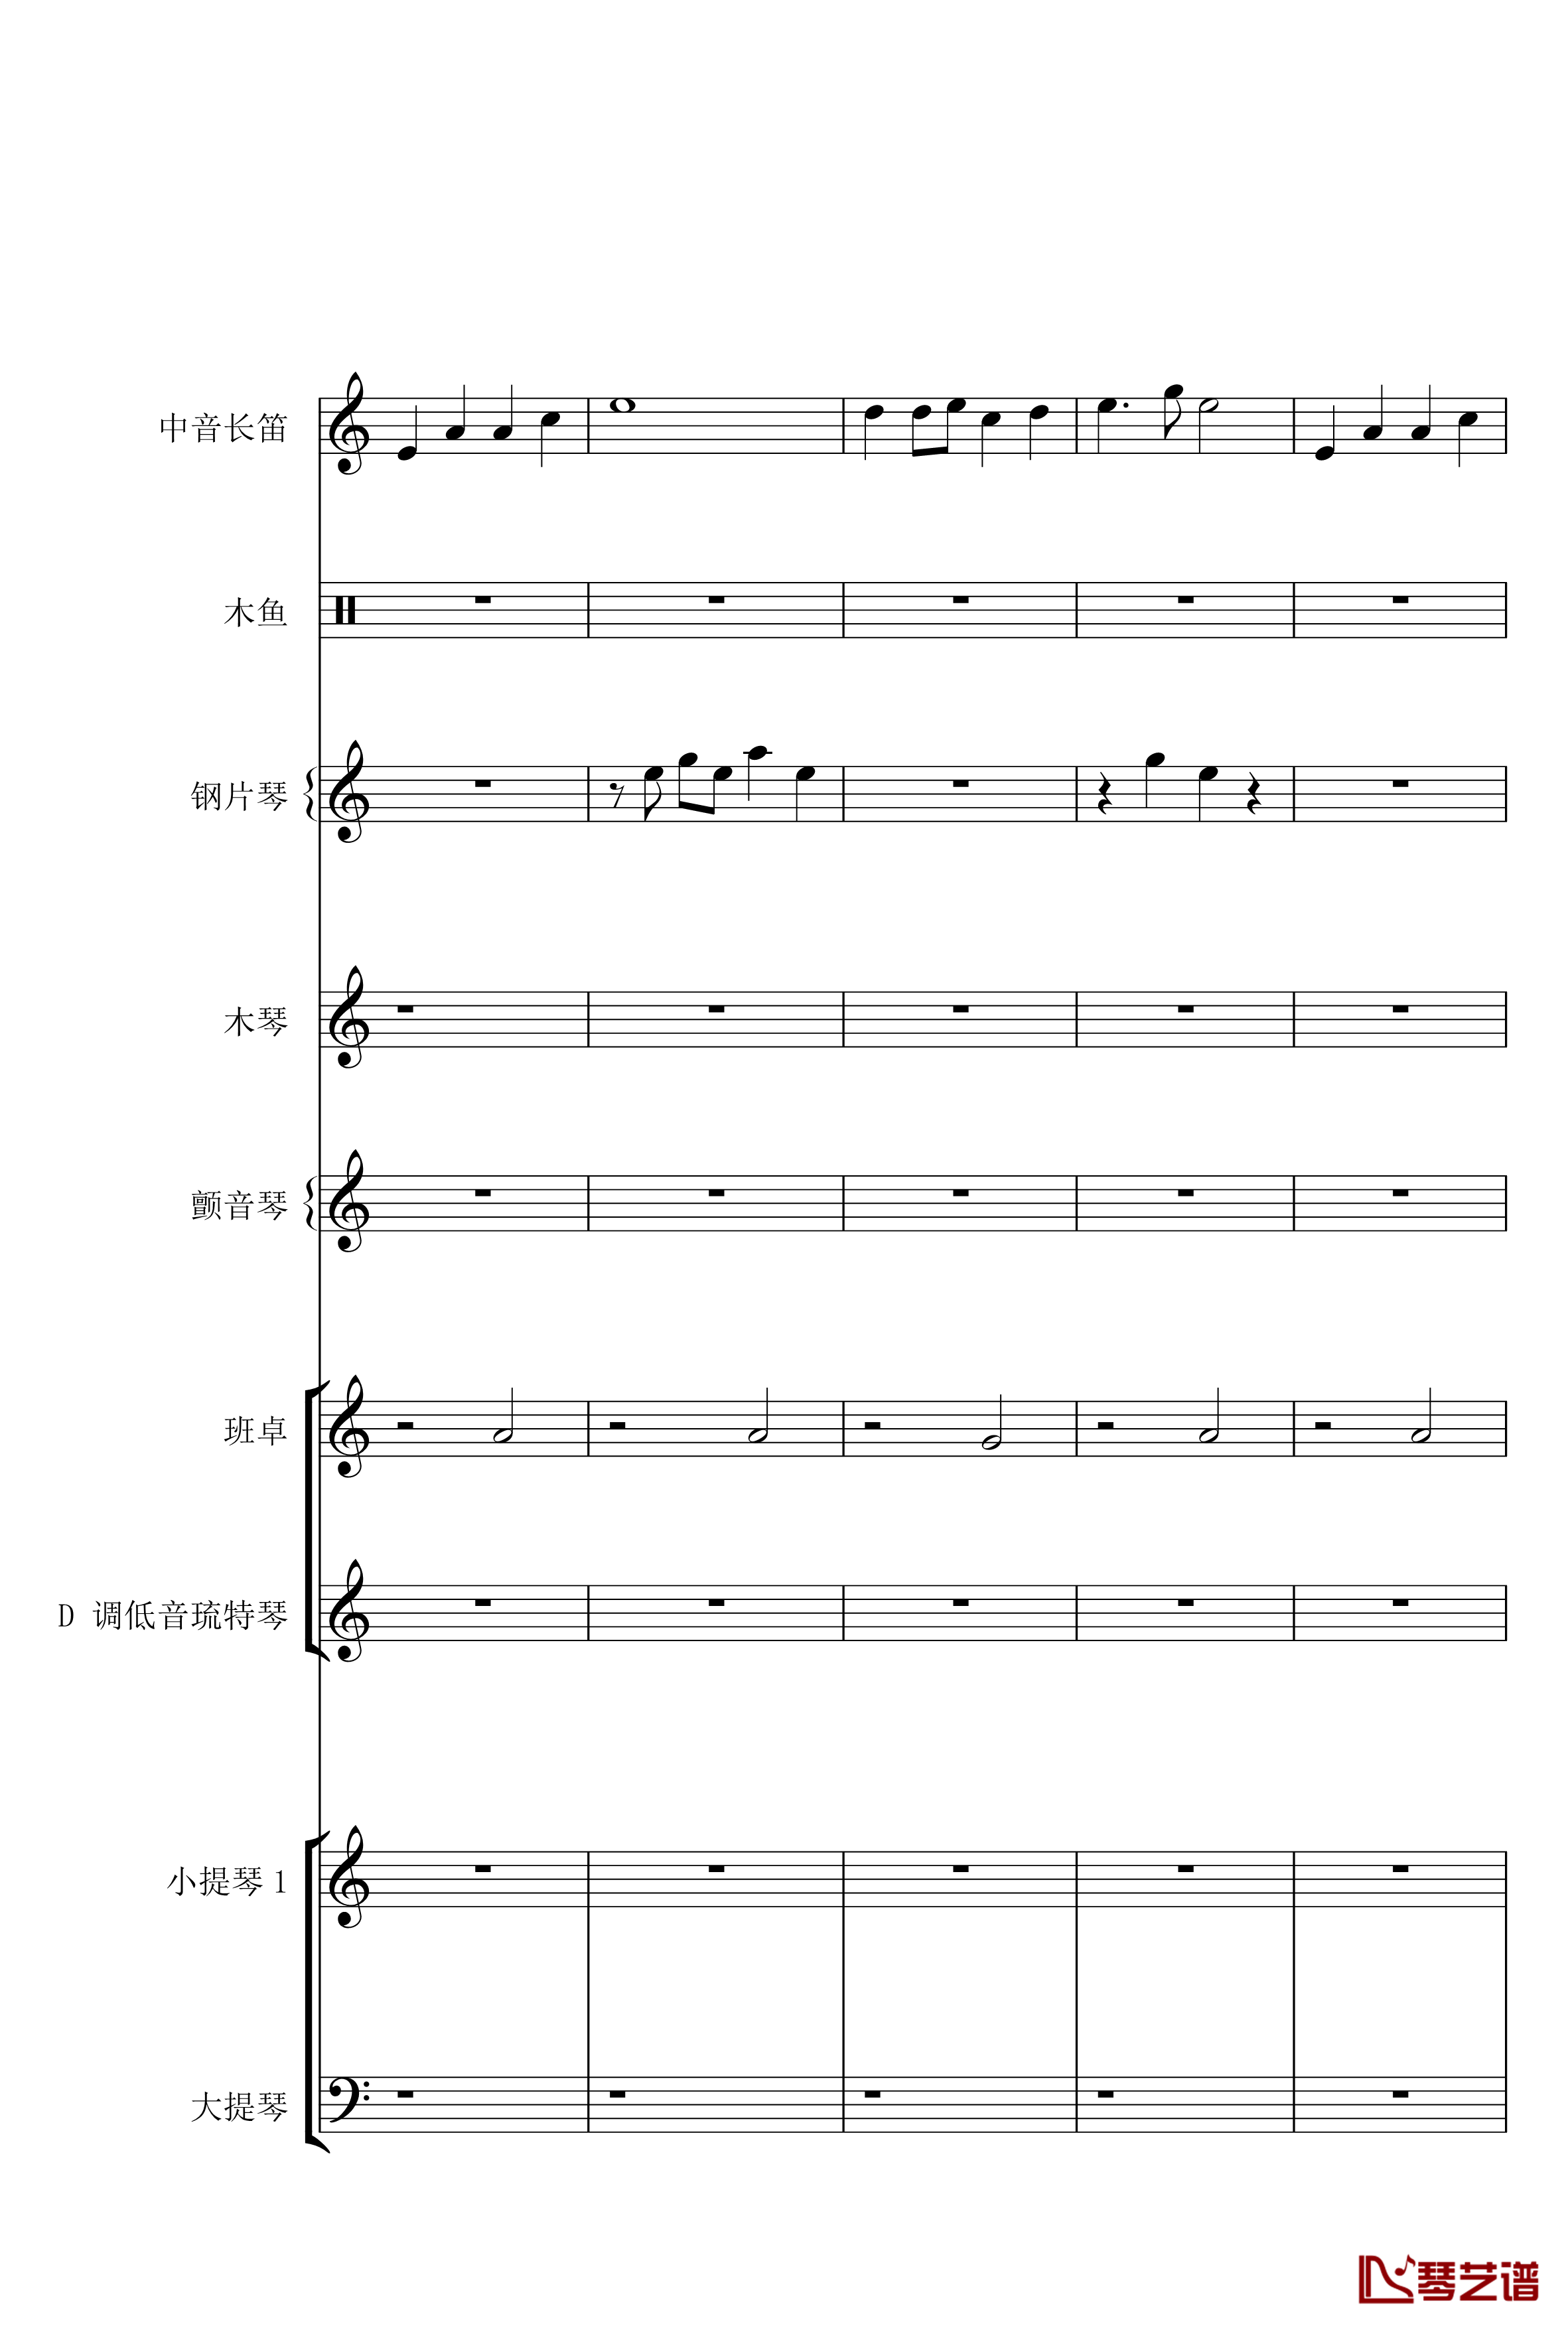  长寿村钢琴谱-梦幻西游1